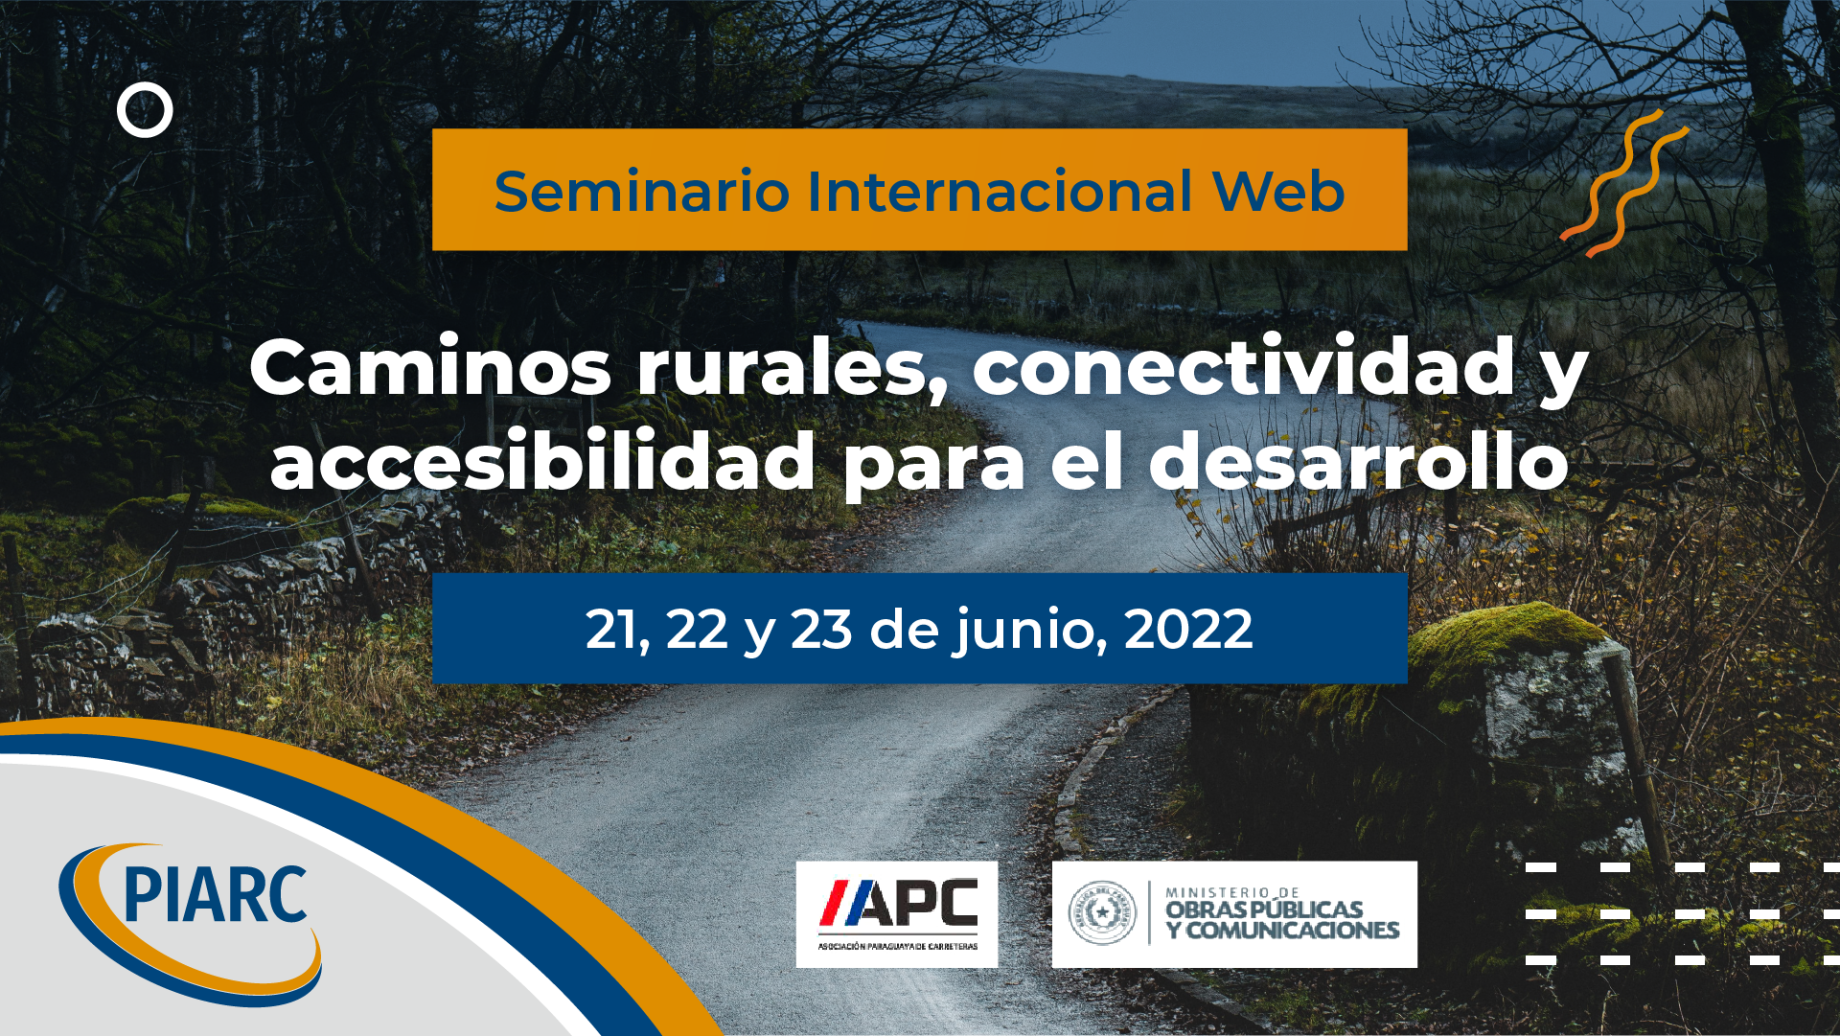 Seminario Internacional en línea de PIARC, 21-23 de junio de 2022